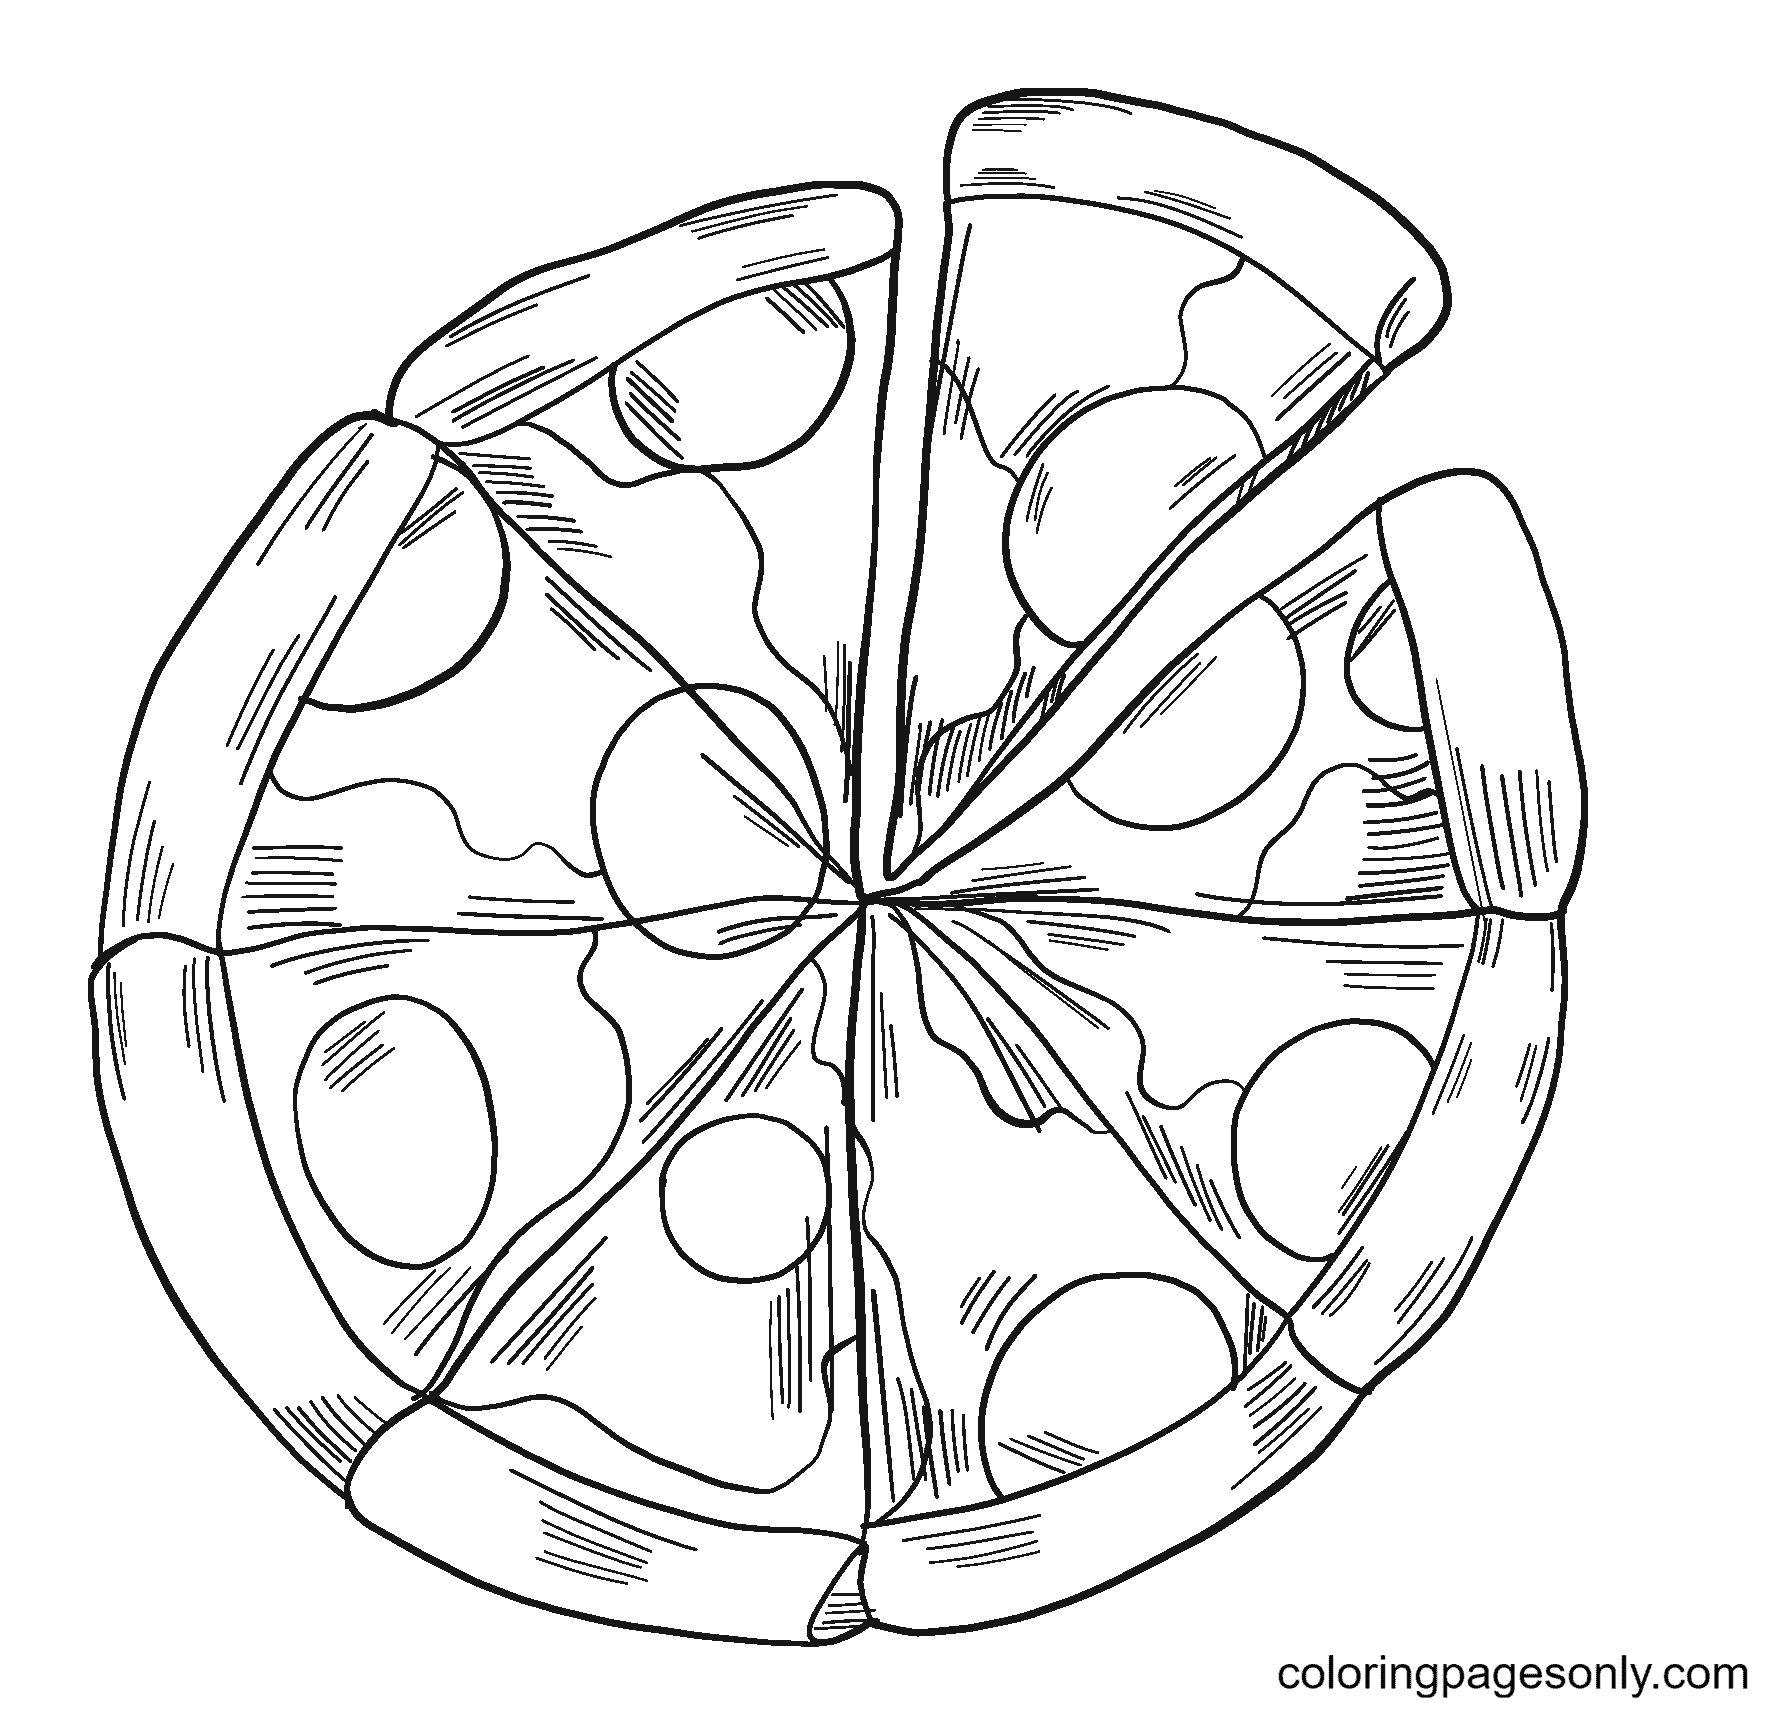 Von Pizza in Stücke geschnittene Pizza